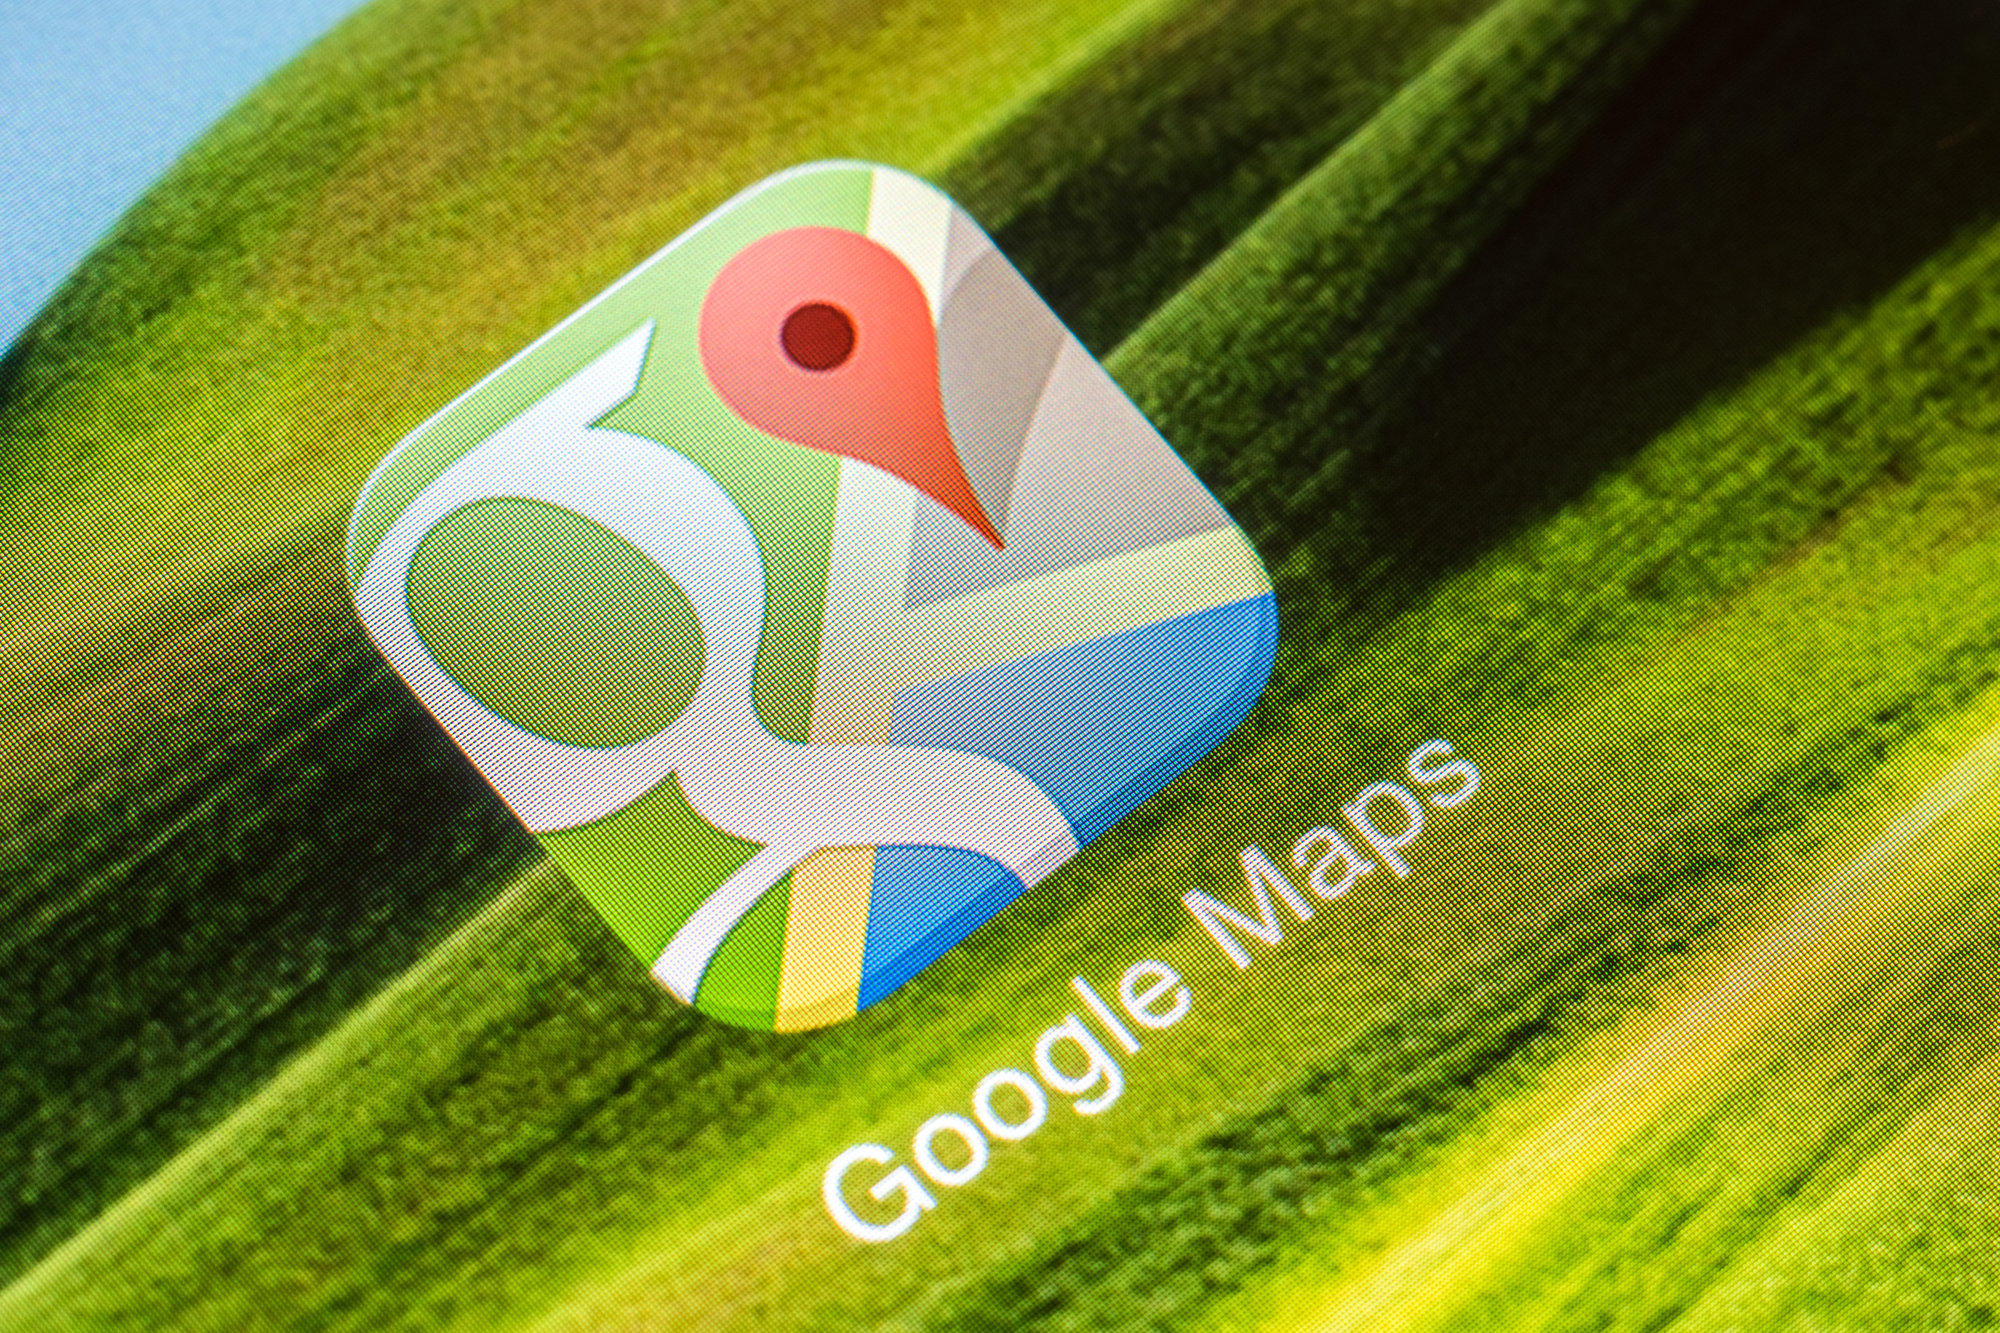 Street View se integrará completamente a Google Maps.